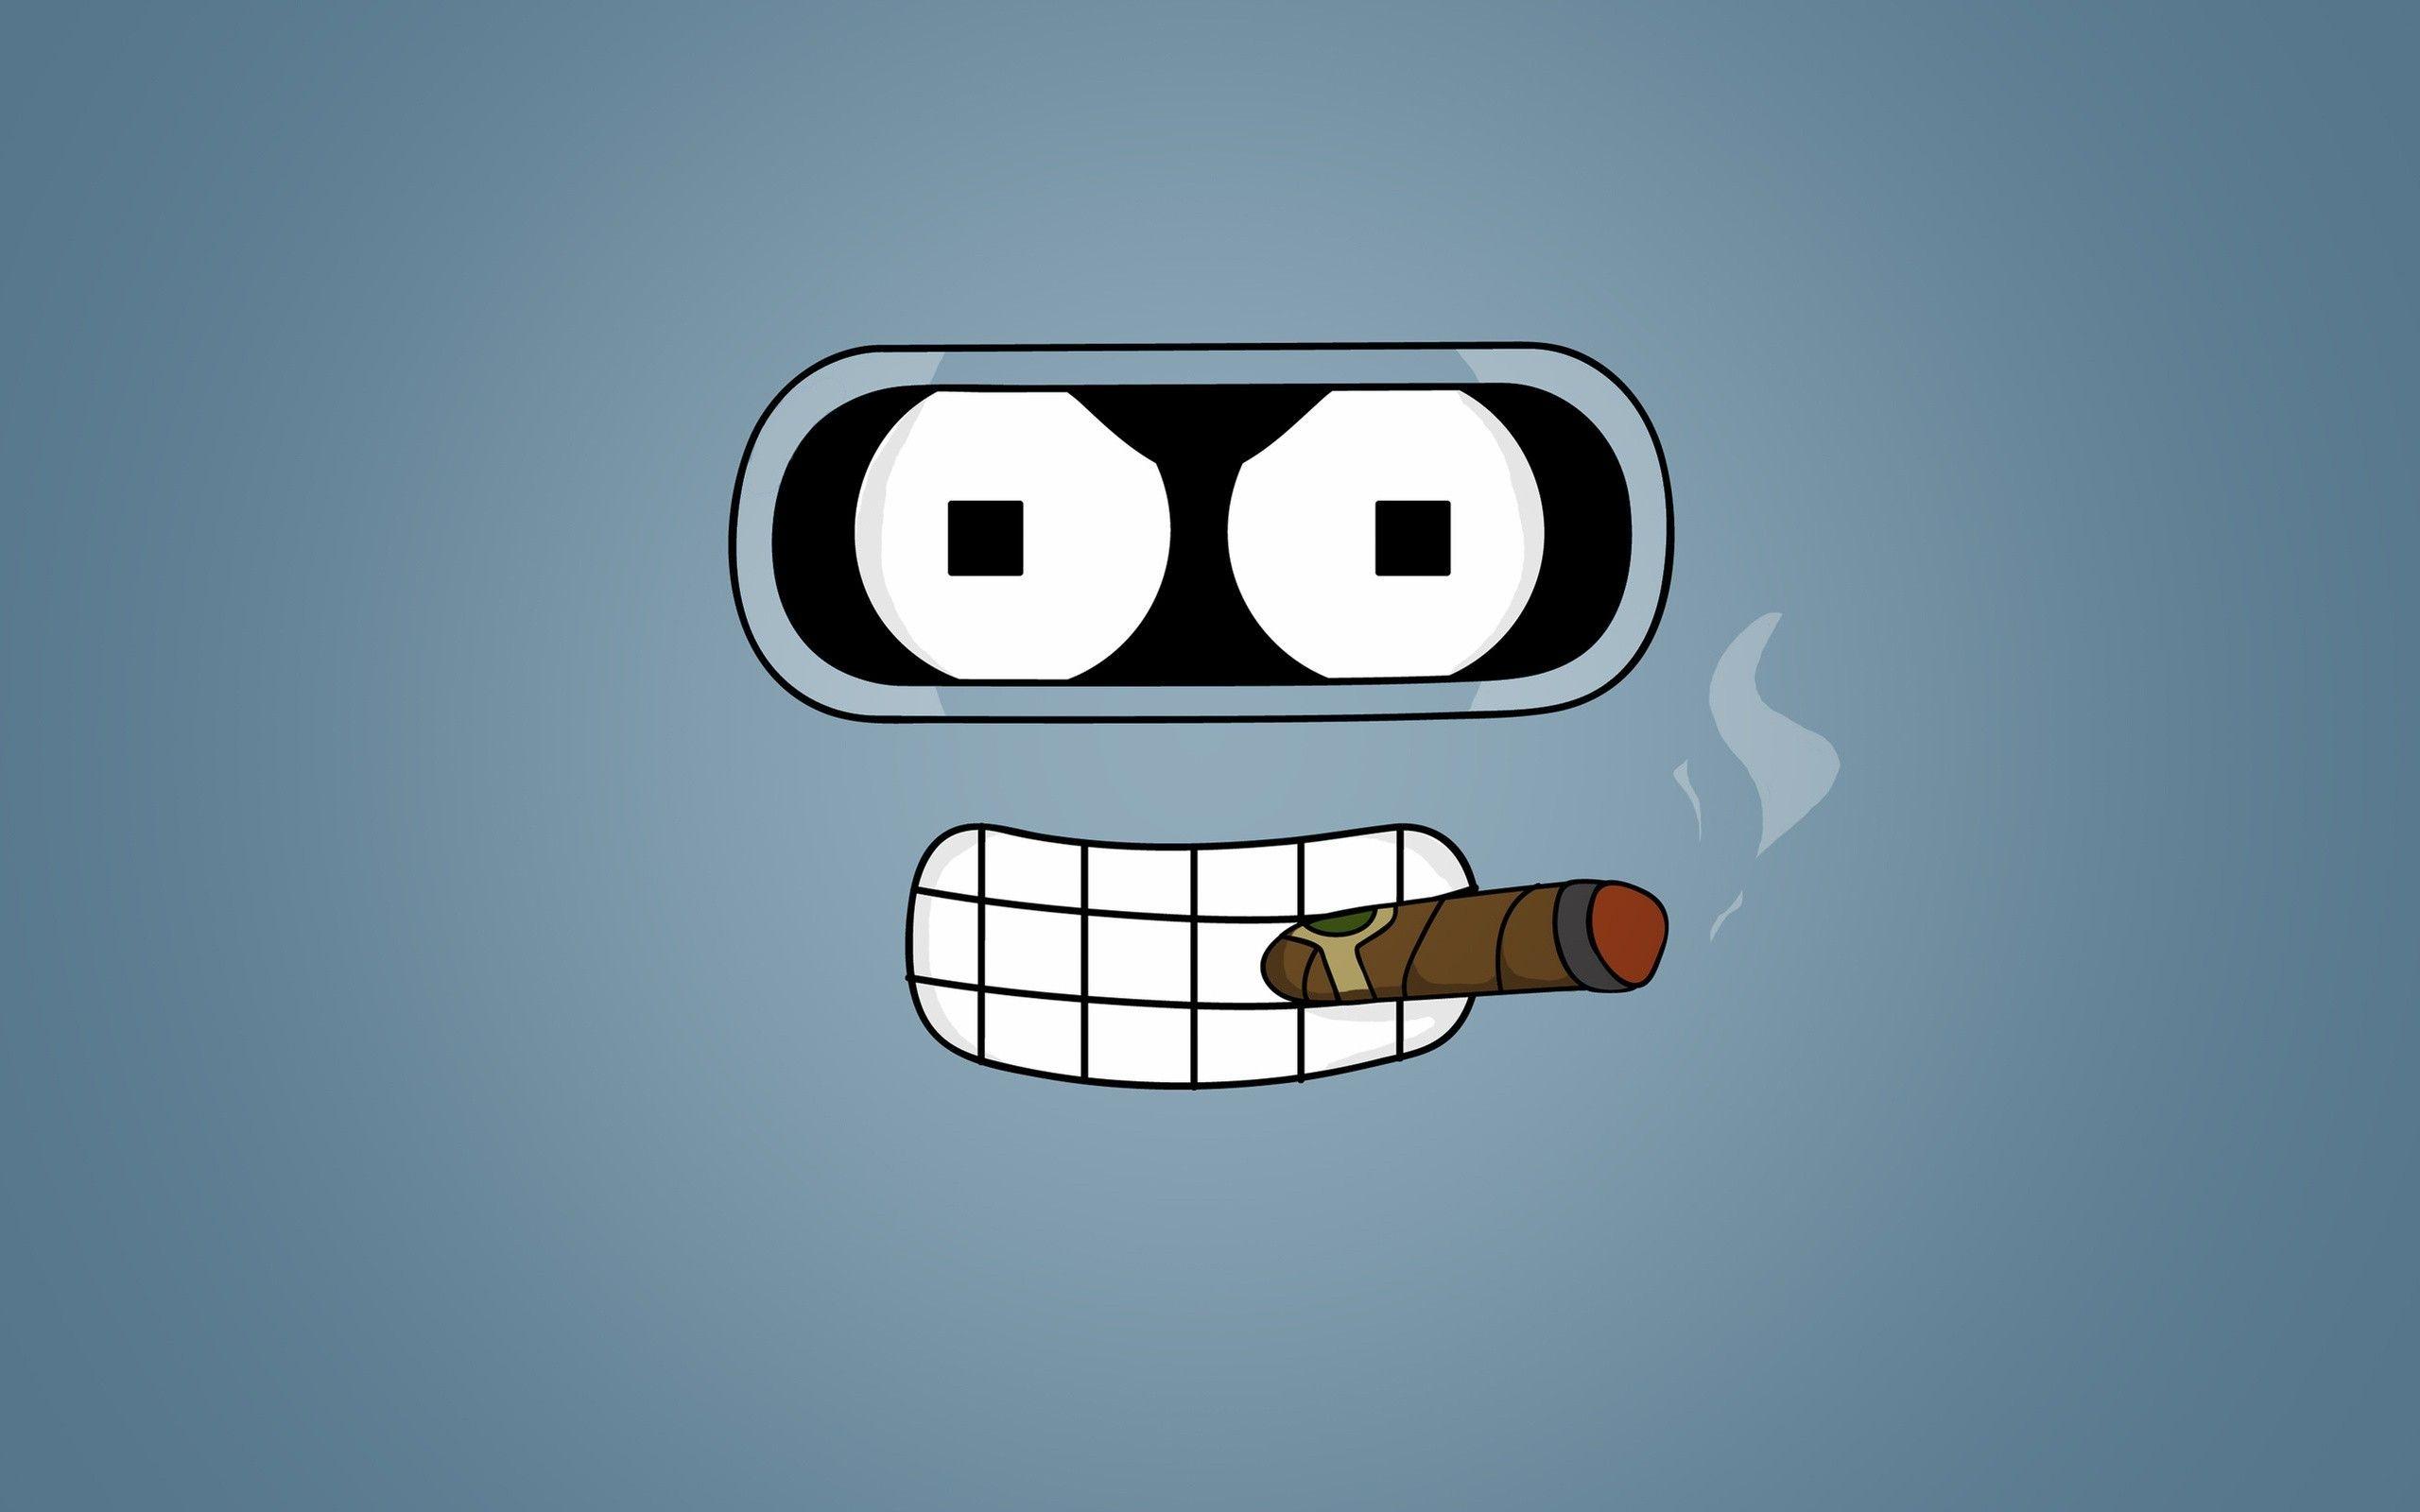 Bender Logo - Wallpaper : illustration, text, logo, cartoon, brand, Futurama